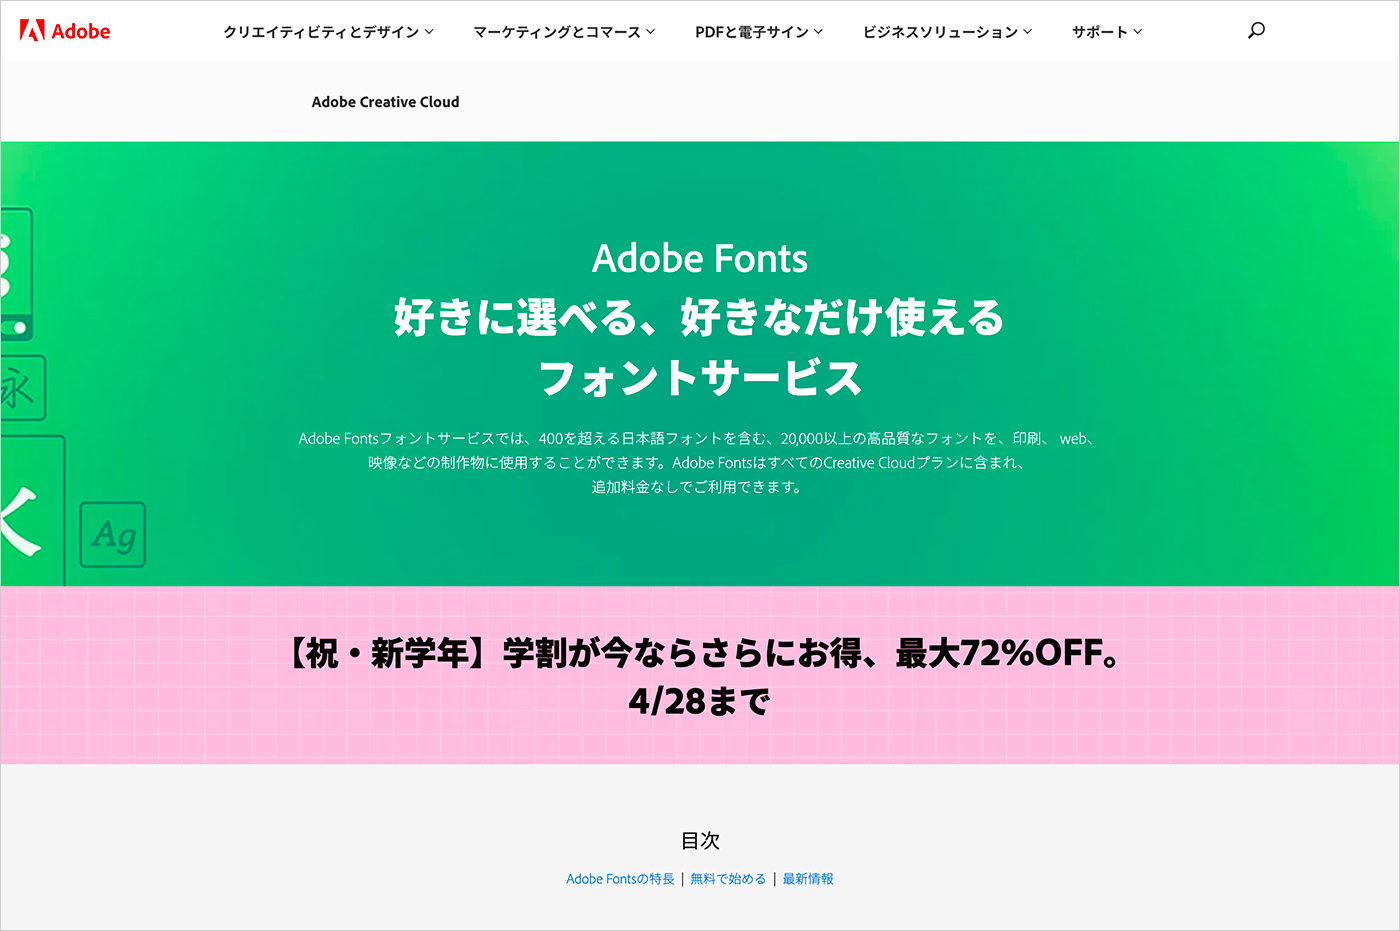 Adobe Fonts サイト